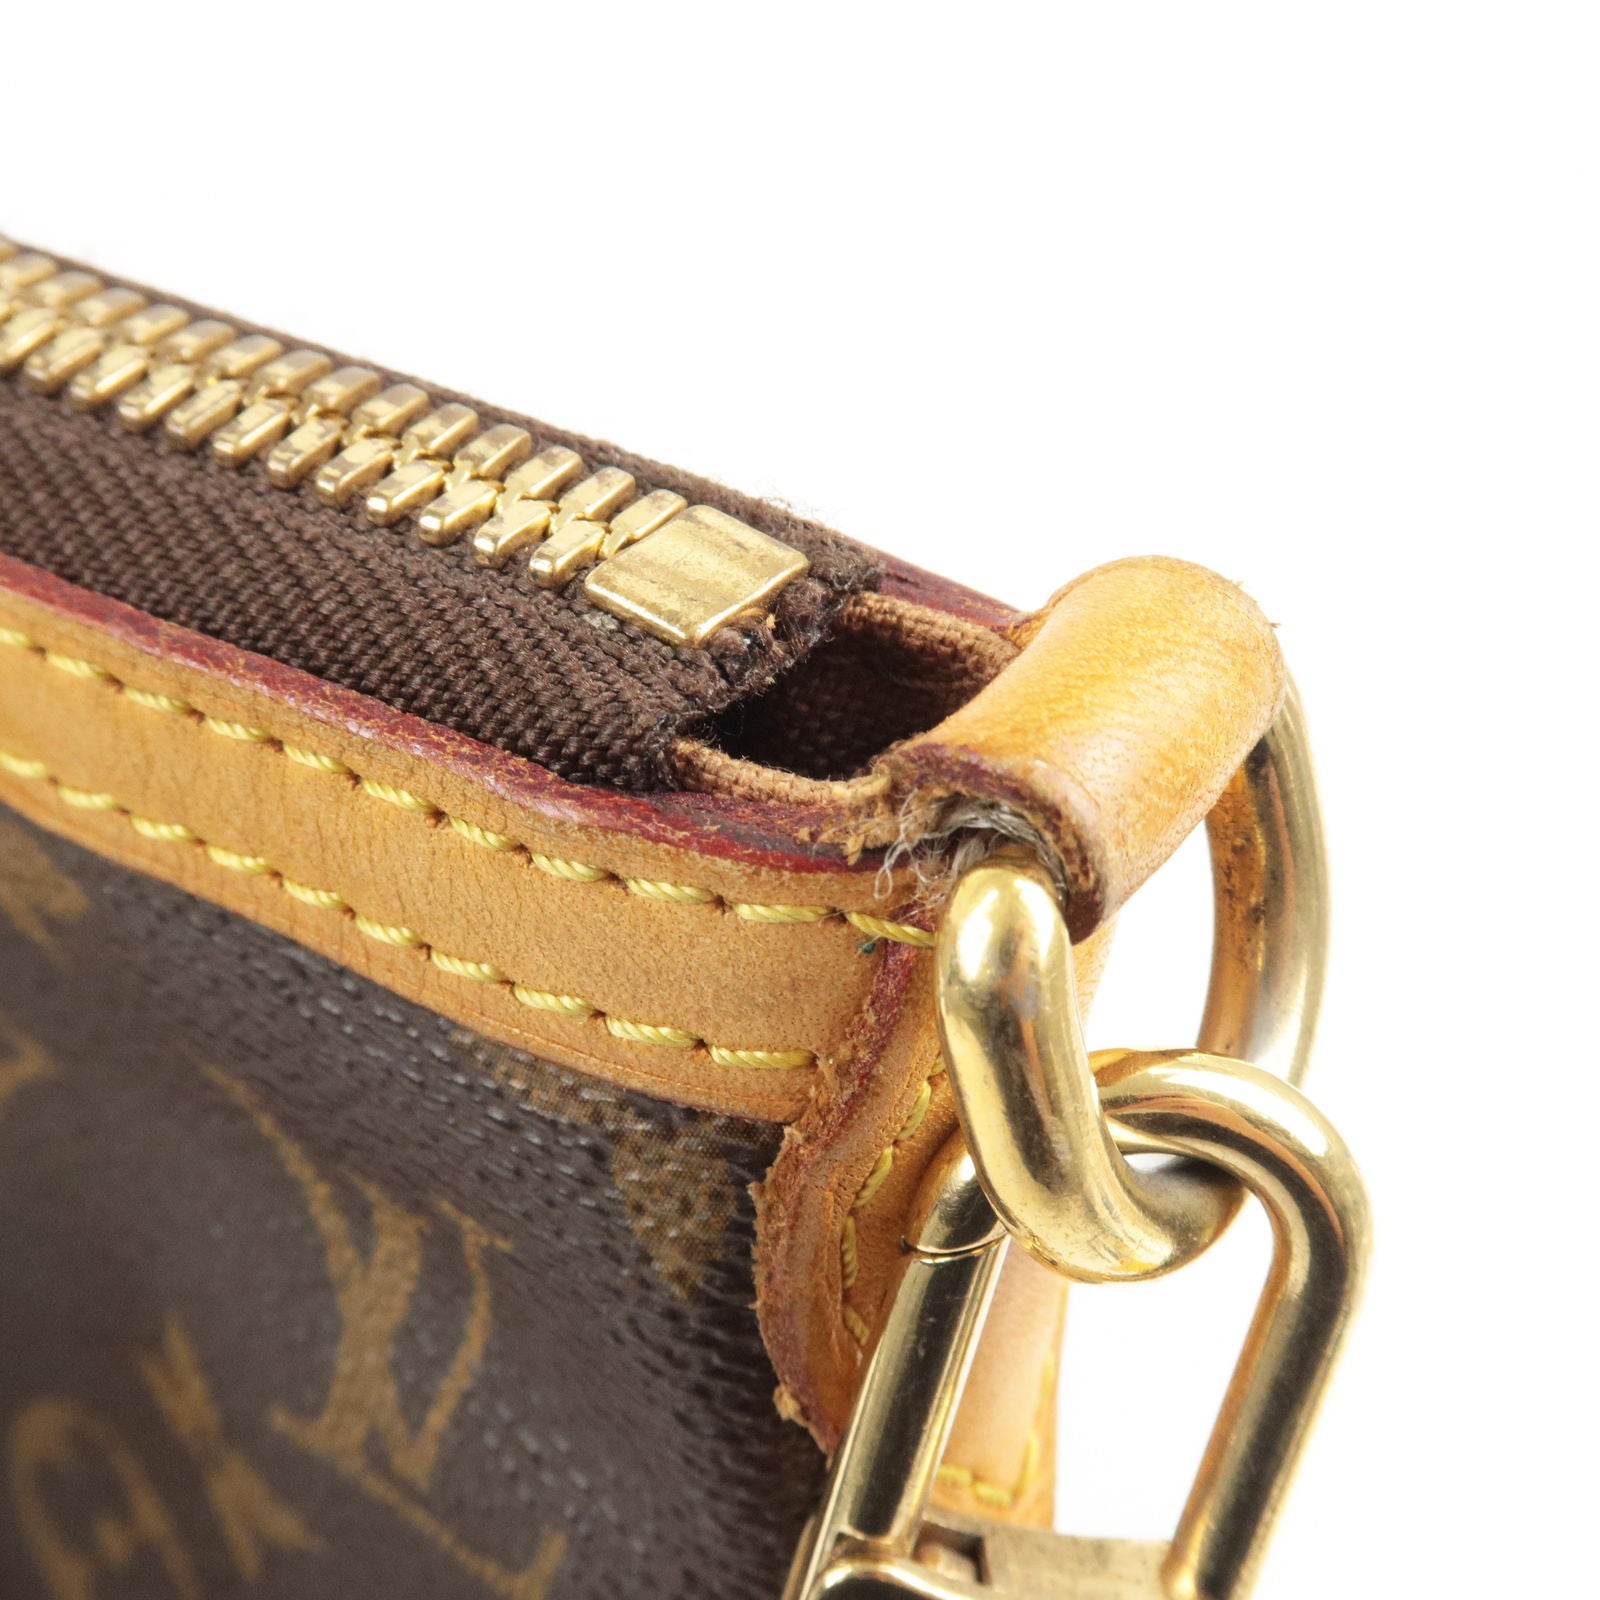 Louis Vuitton Damier Azur Noe Grande GM Drawstring Bag